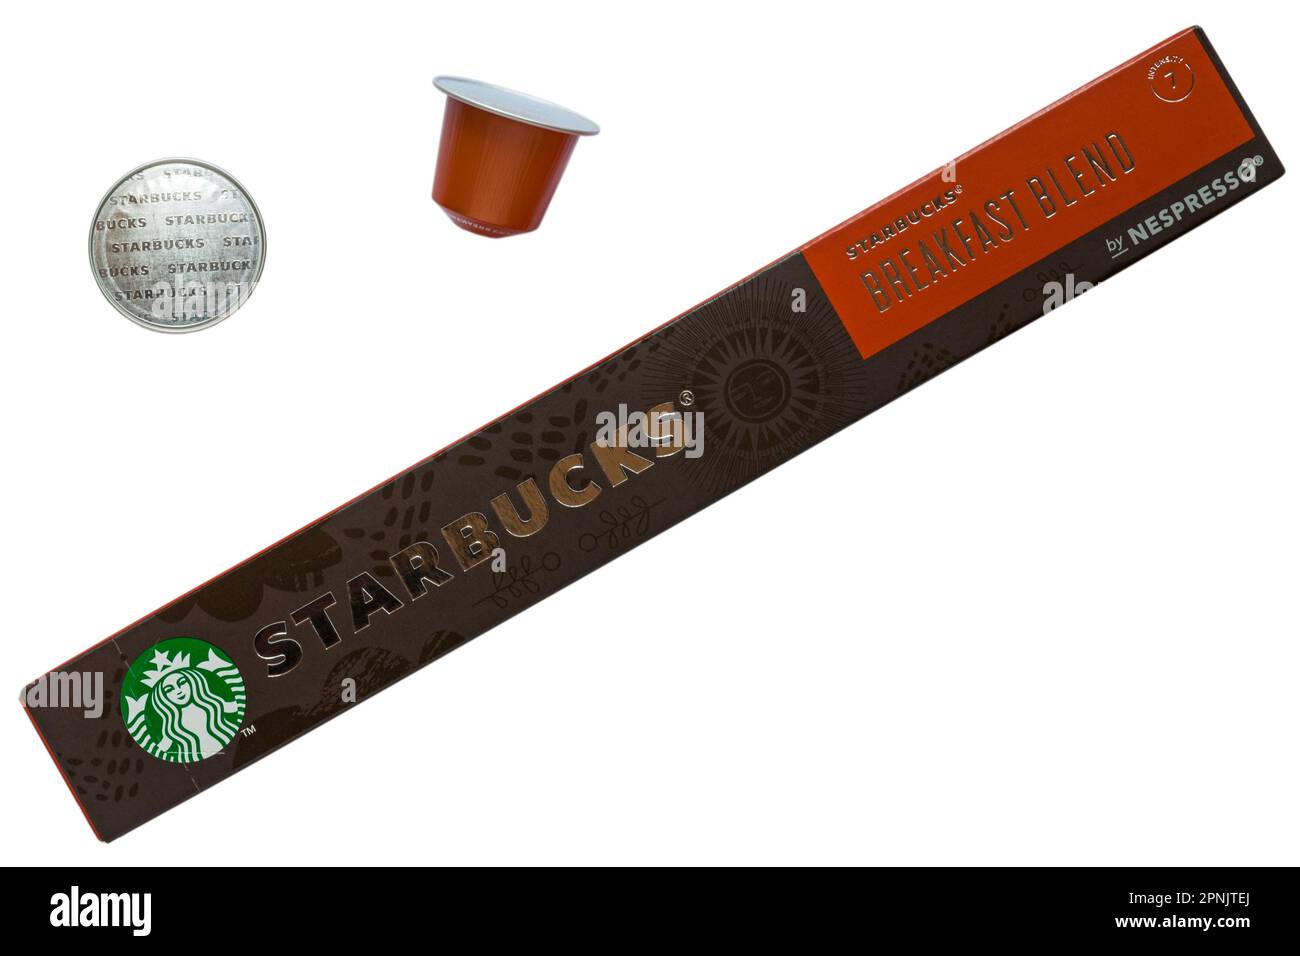 Schachtel Starbucks Breakfast Blend Kaffeekapseln mit Nespresso, aus der zwei Kapseln entfernt wurden, isoliert auf weißem Hintergrund Stockfoto